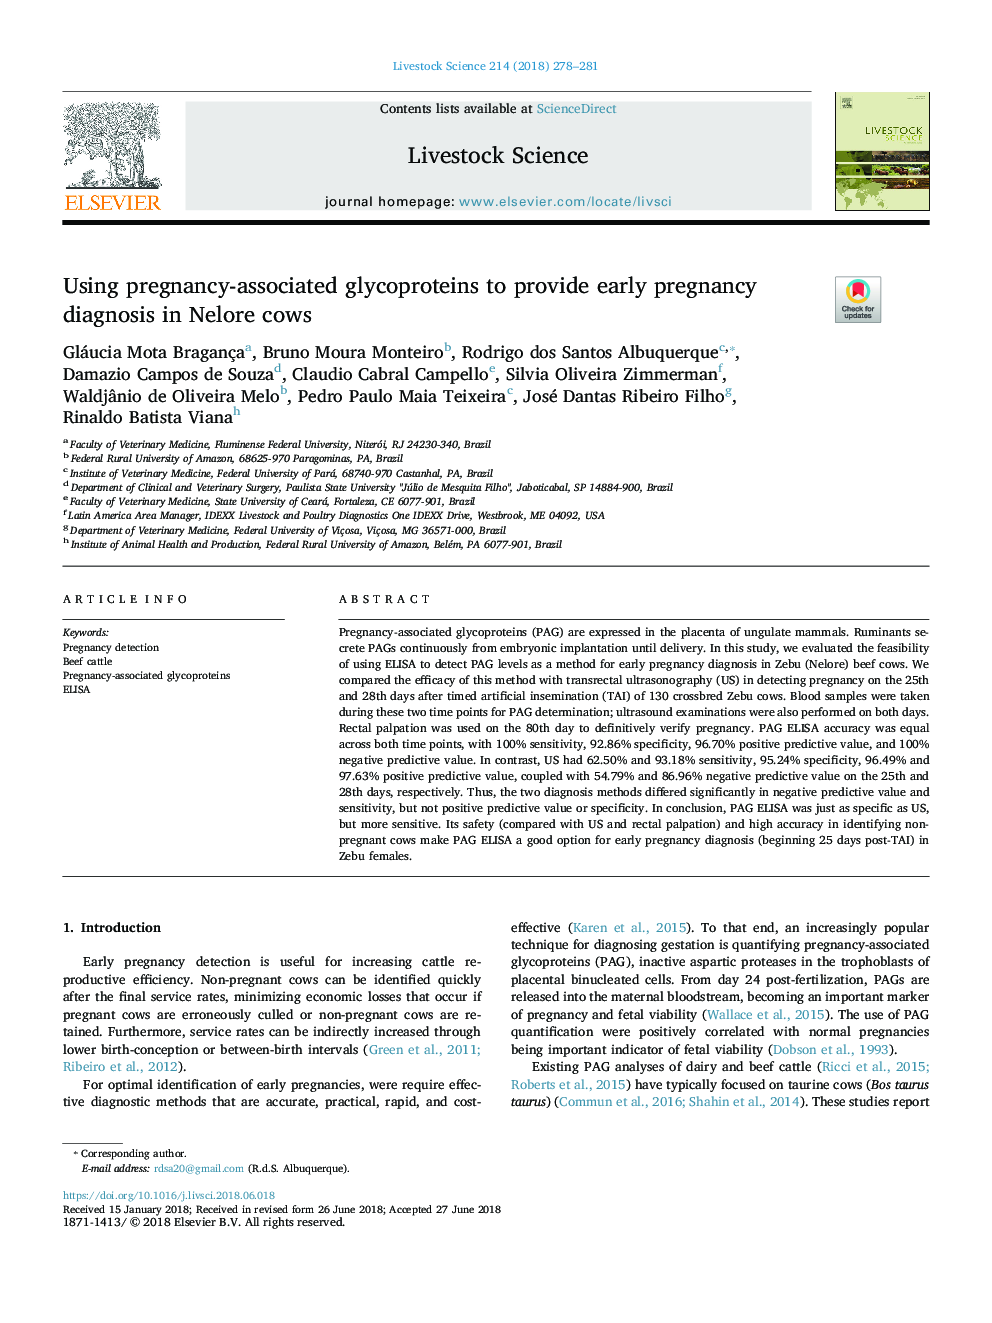 استفاده از گلیکوپروتئین های مرتبط با بارداری برای تشخیص زودرس بارداری در گاوهای نولوره 